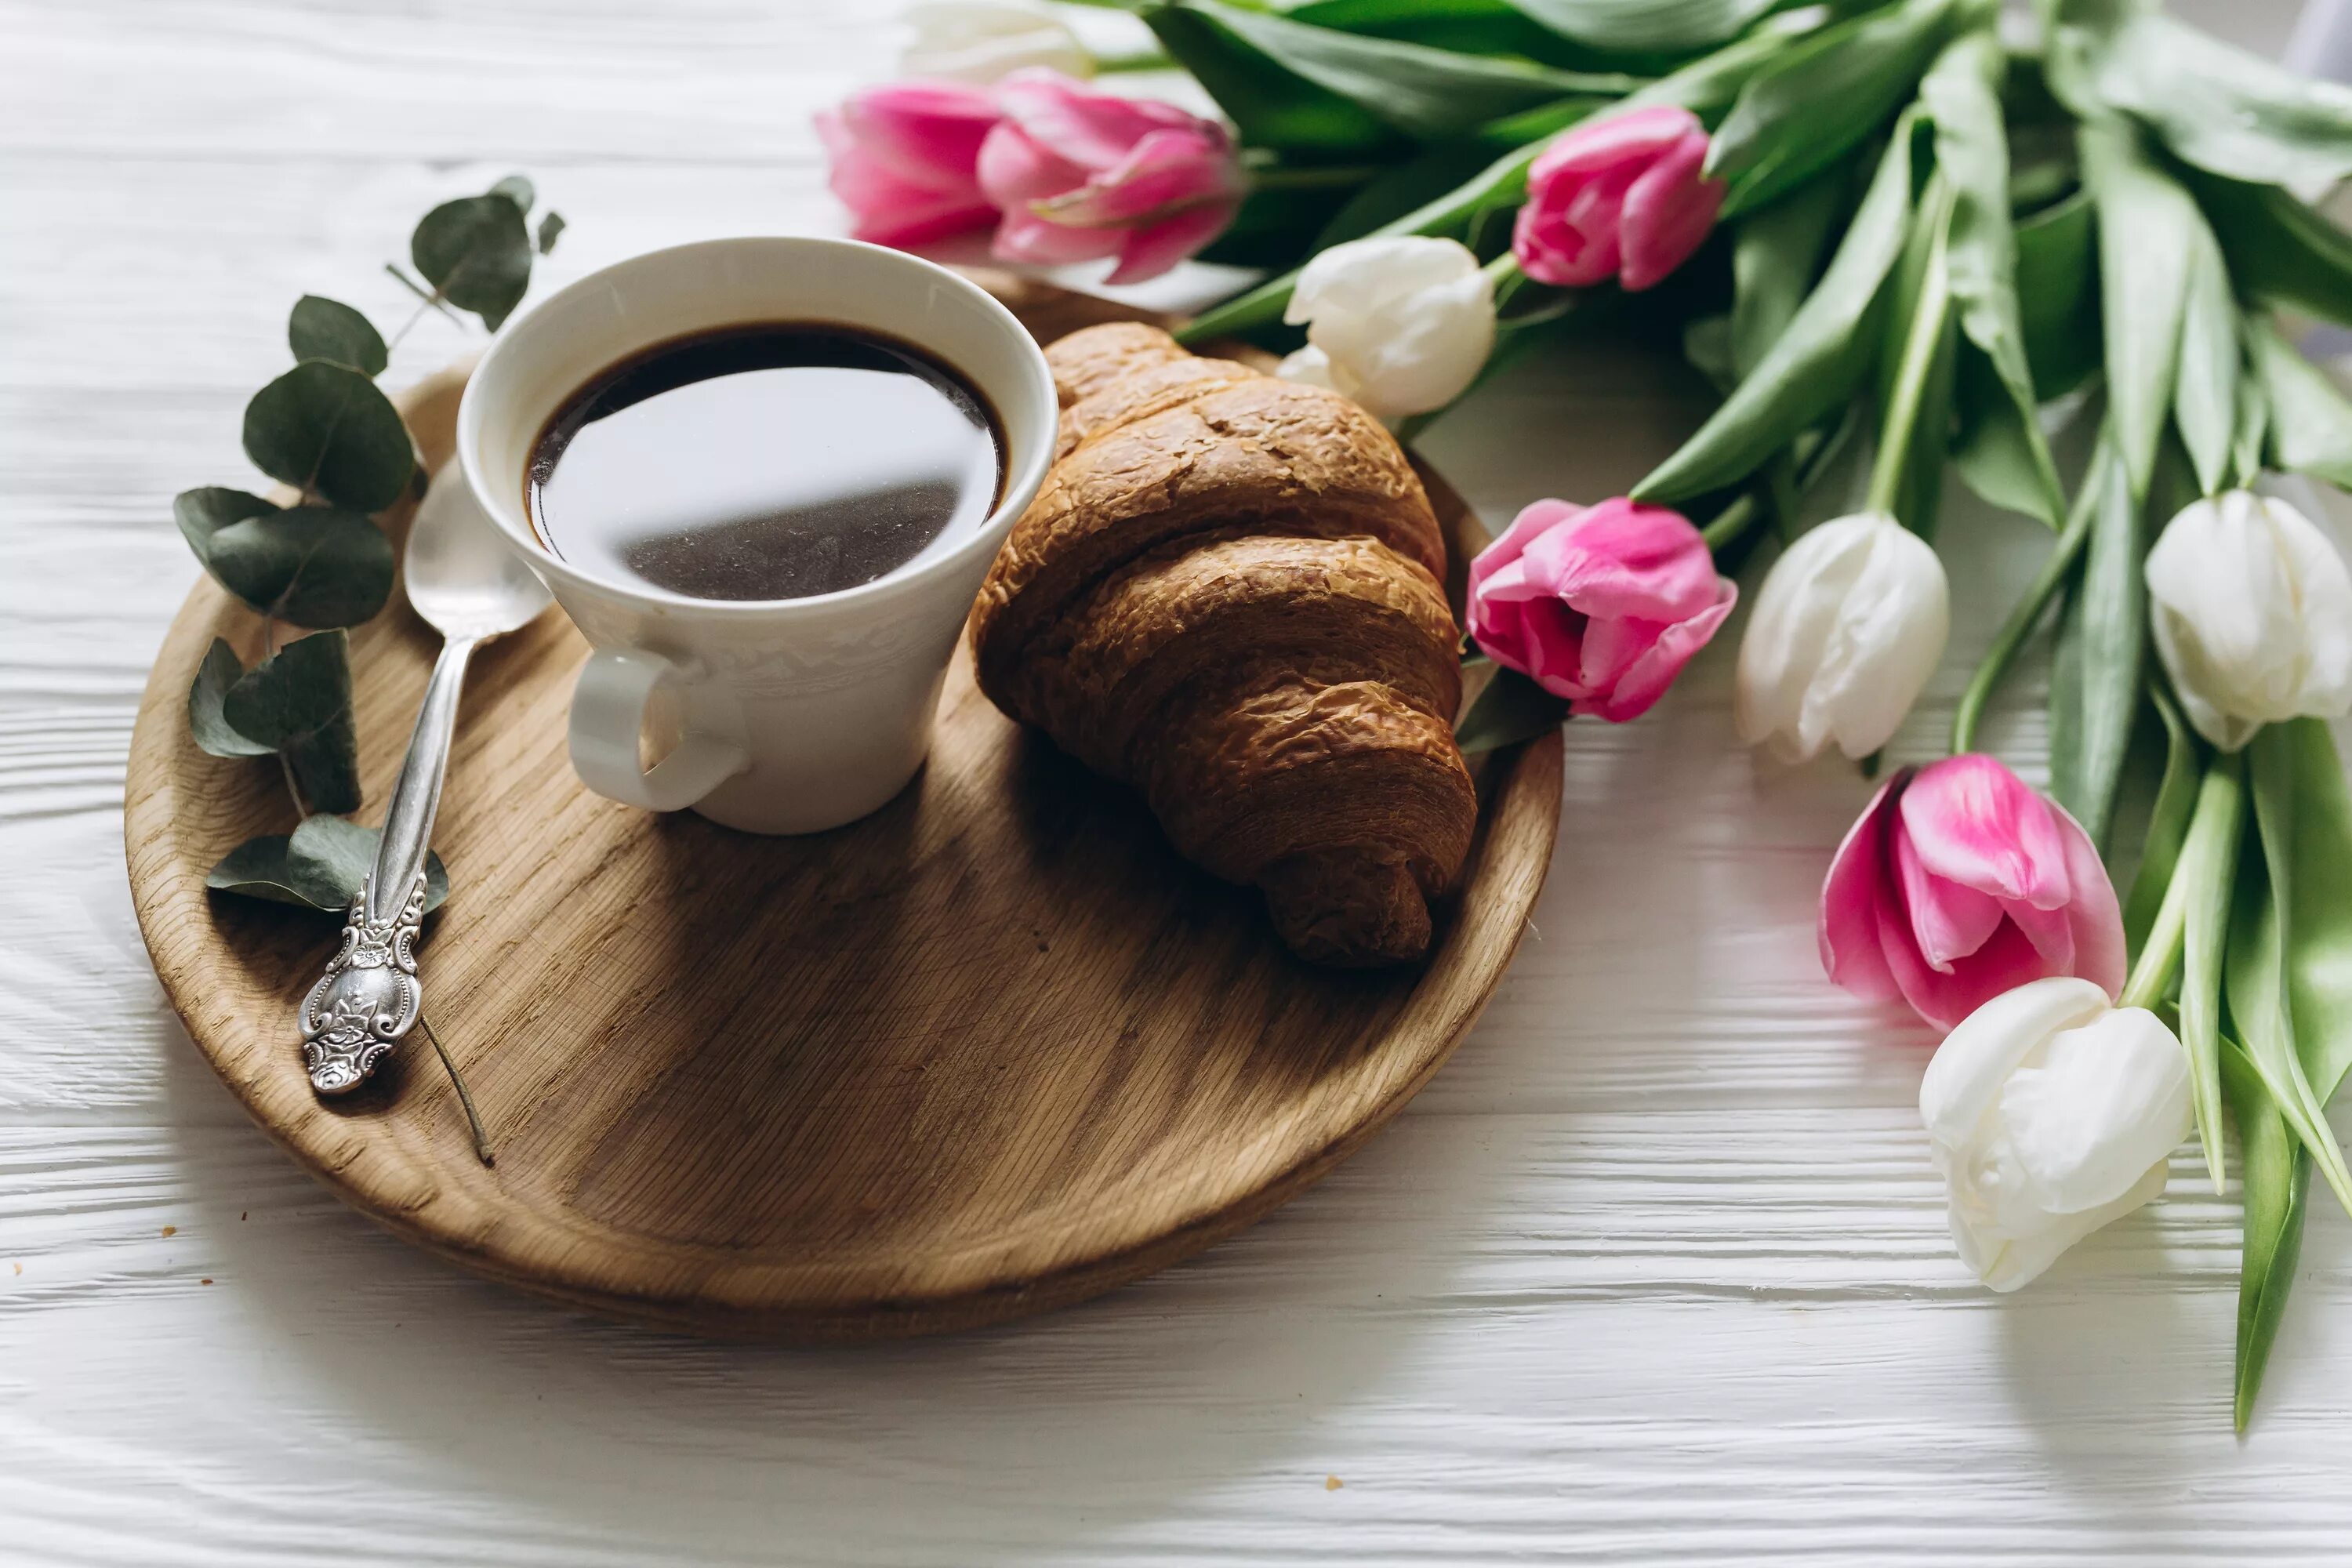 Кофе и цветы. Кофе с цветами. Красивый завтрак с цветами. Завтрак с цветами и кофе. Кофе и тюльпаны картинки